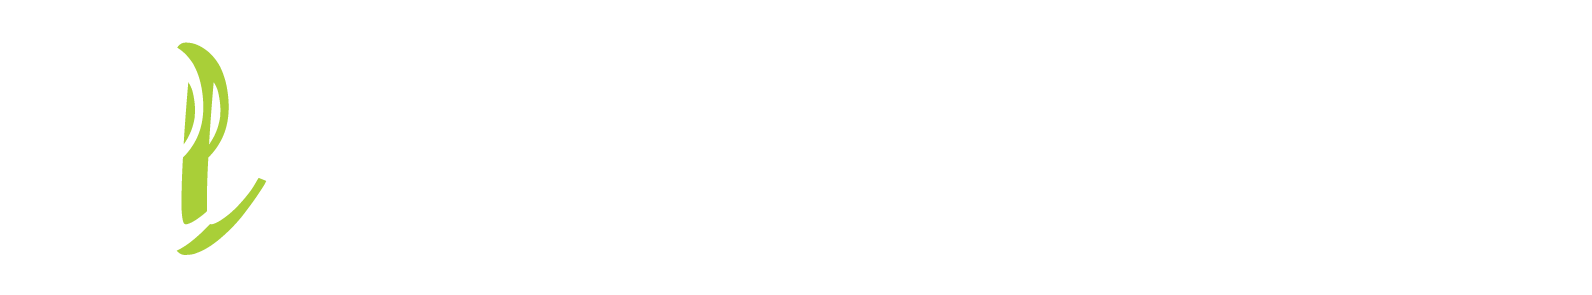 Viva Las Logos & Design